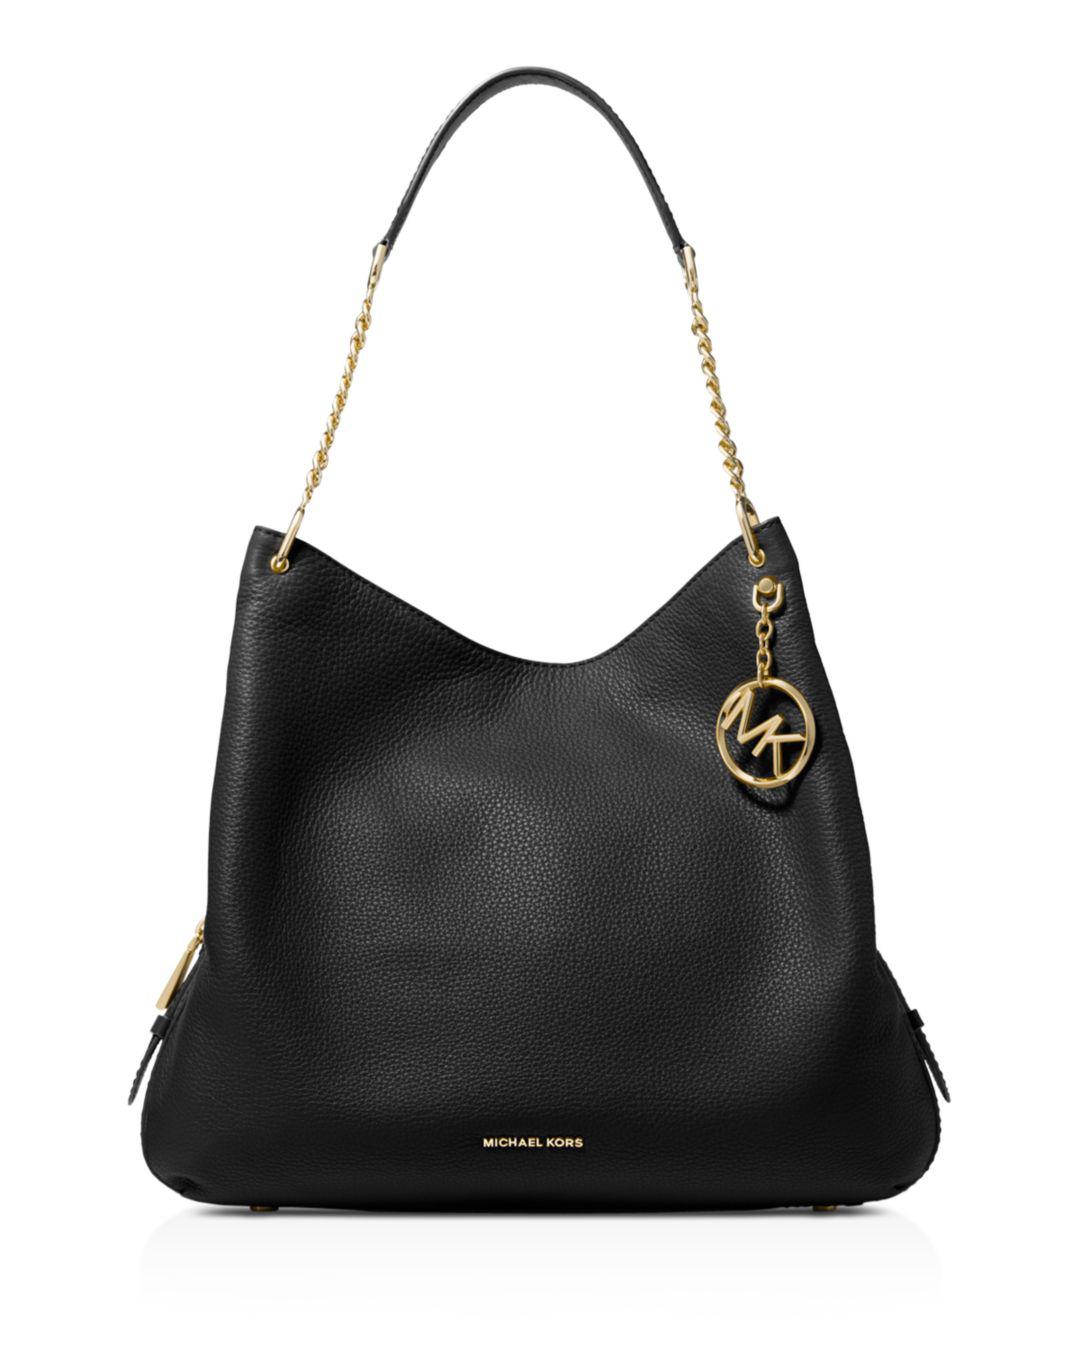 Michael Kors Synthetic Lillie Large Pebbled Leather Shoulder Bag in Black/Gold (Black) - Lyst